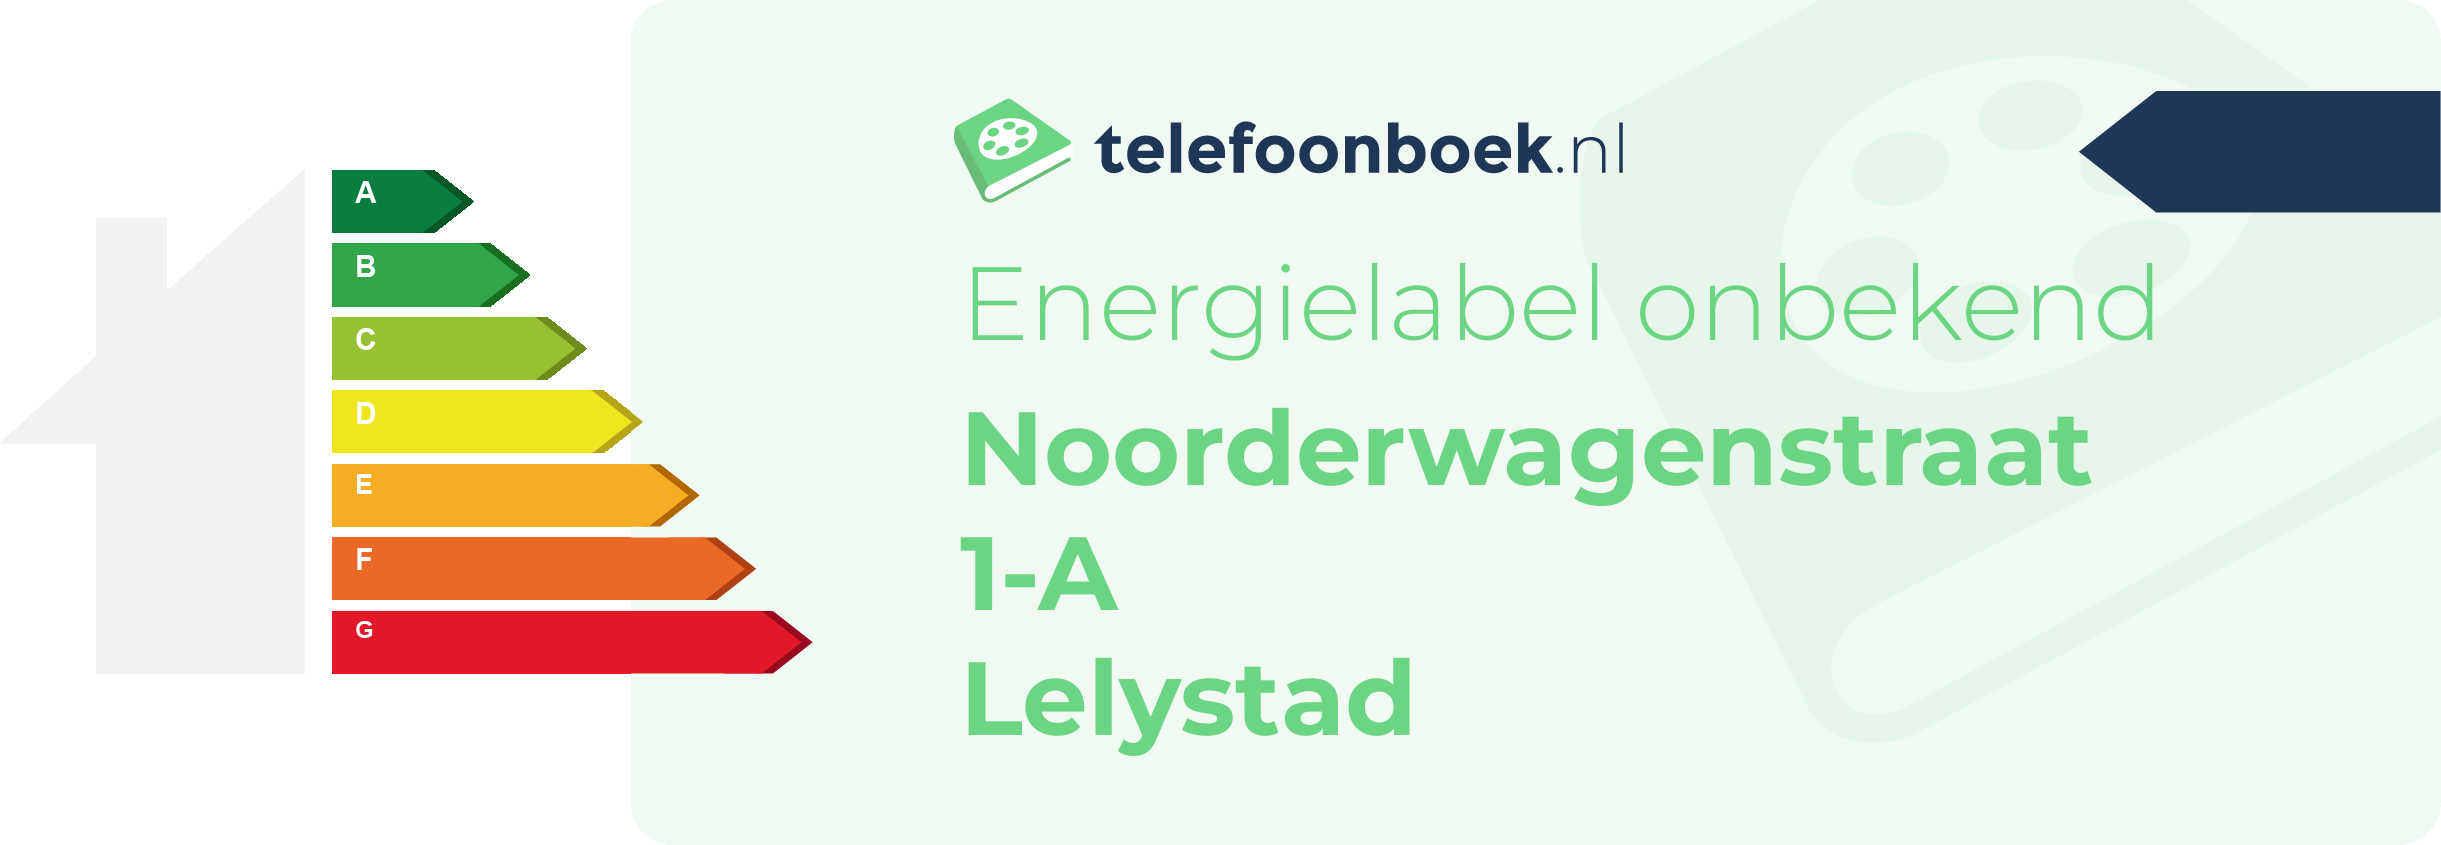 Energielabel Noorderwagenstraat 1-A Lelystad